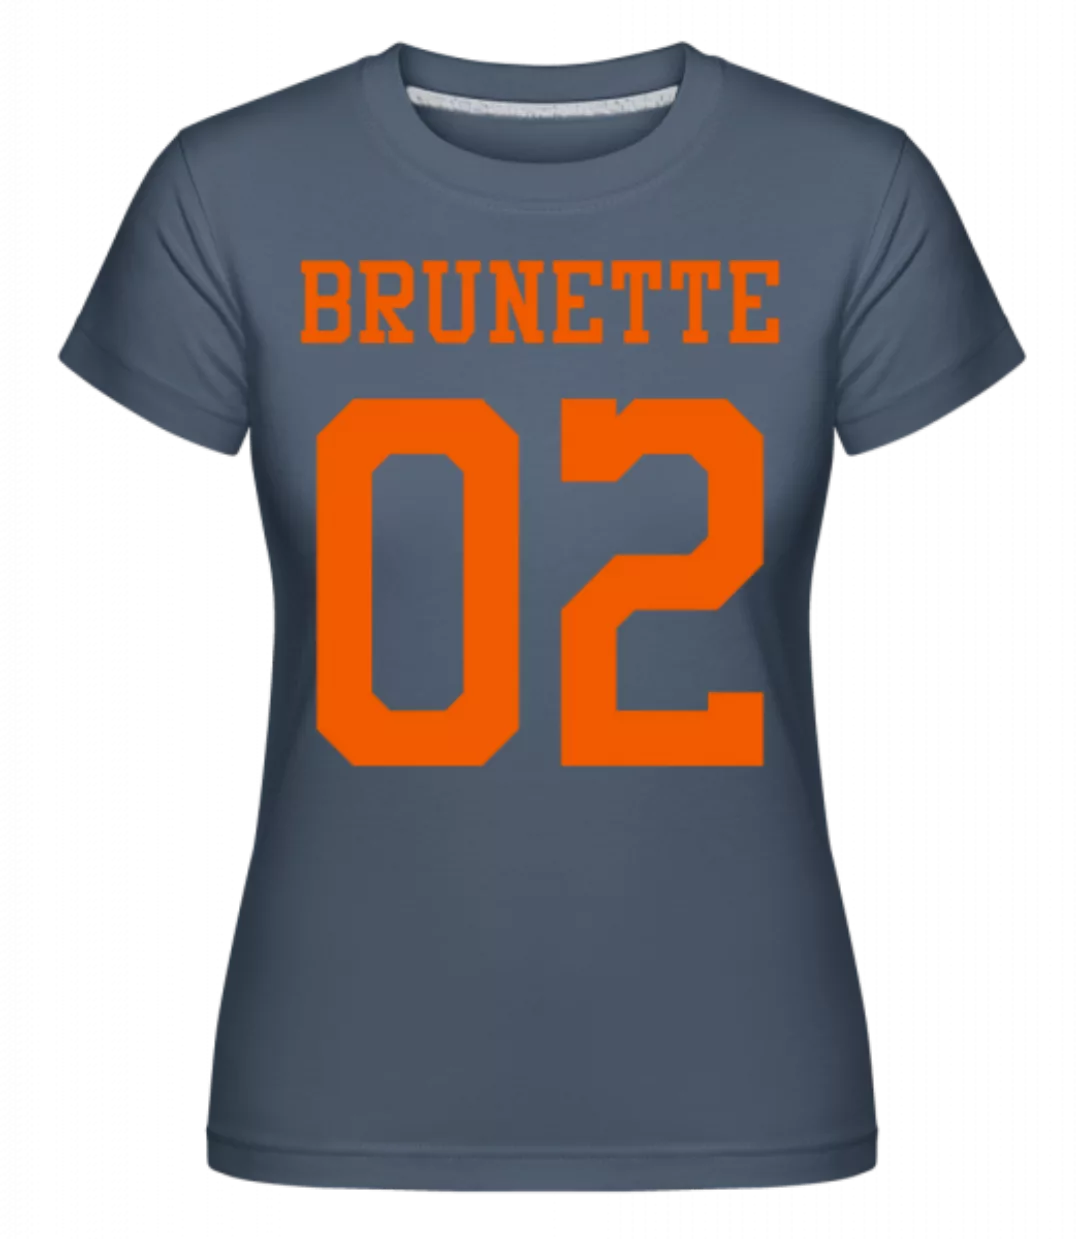 Brunette 02 · Shirtinator Frauen T-Shirt günstig online kaufen